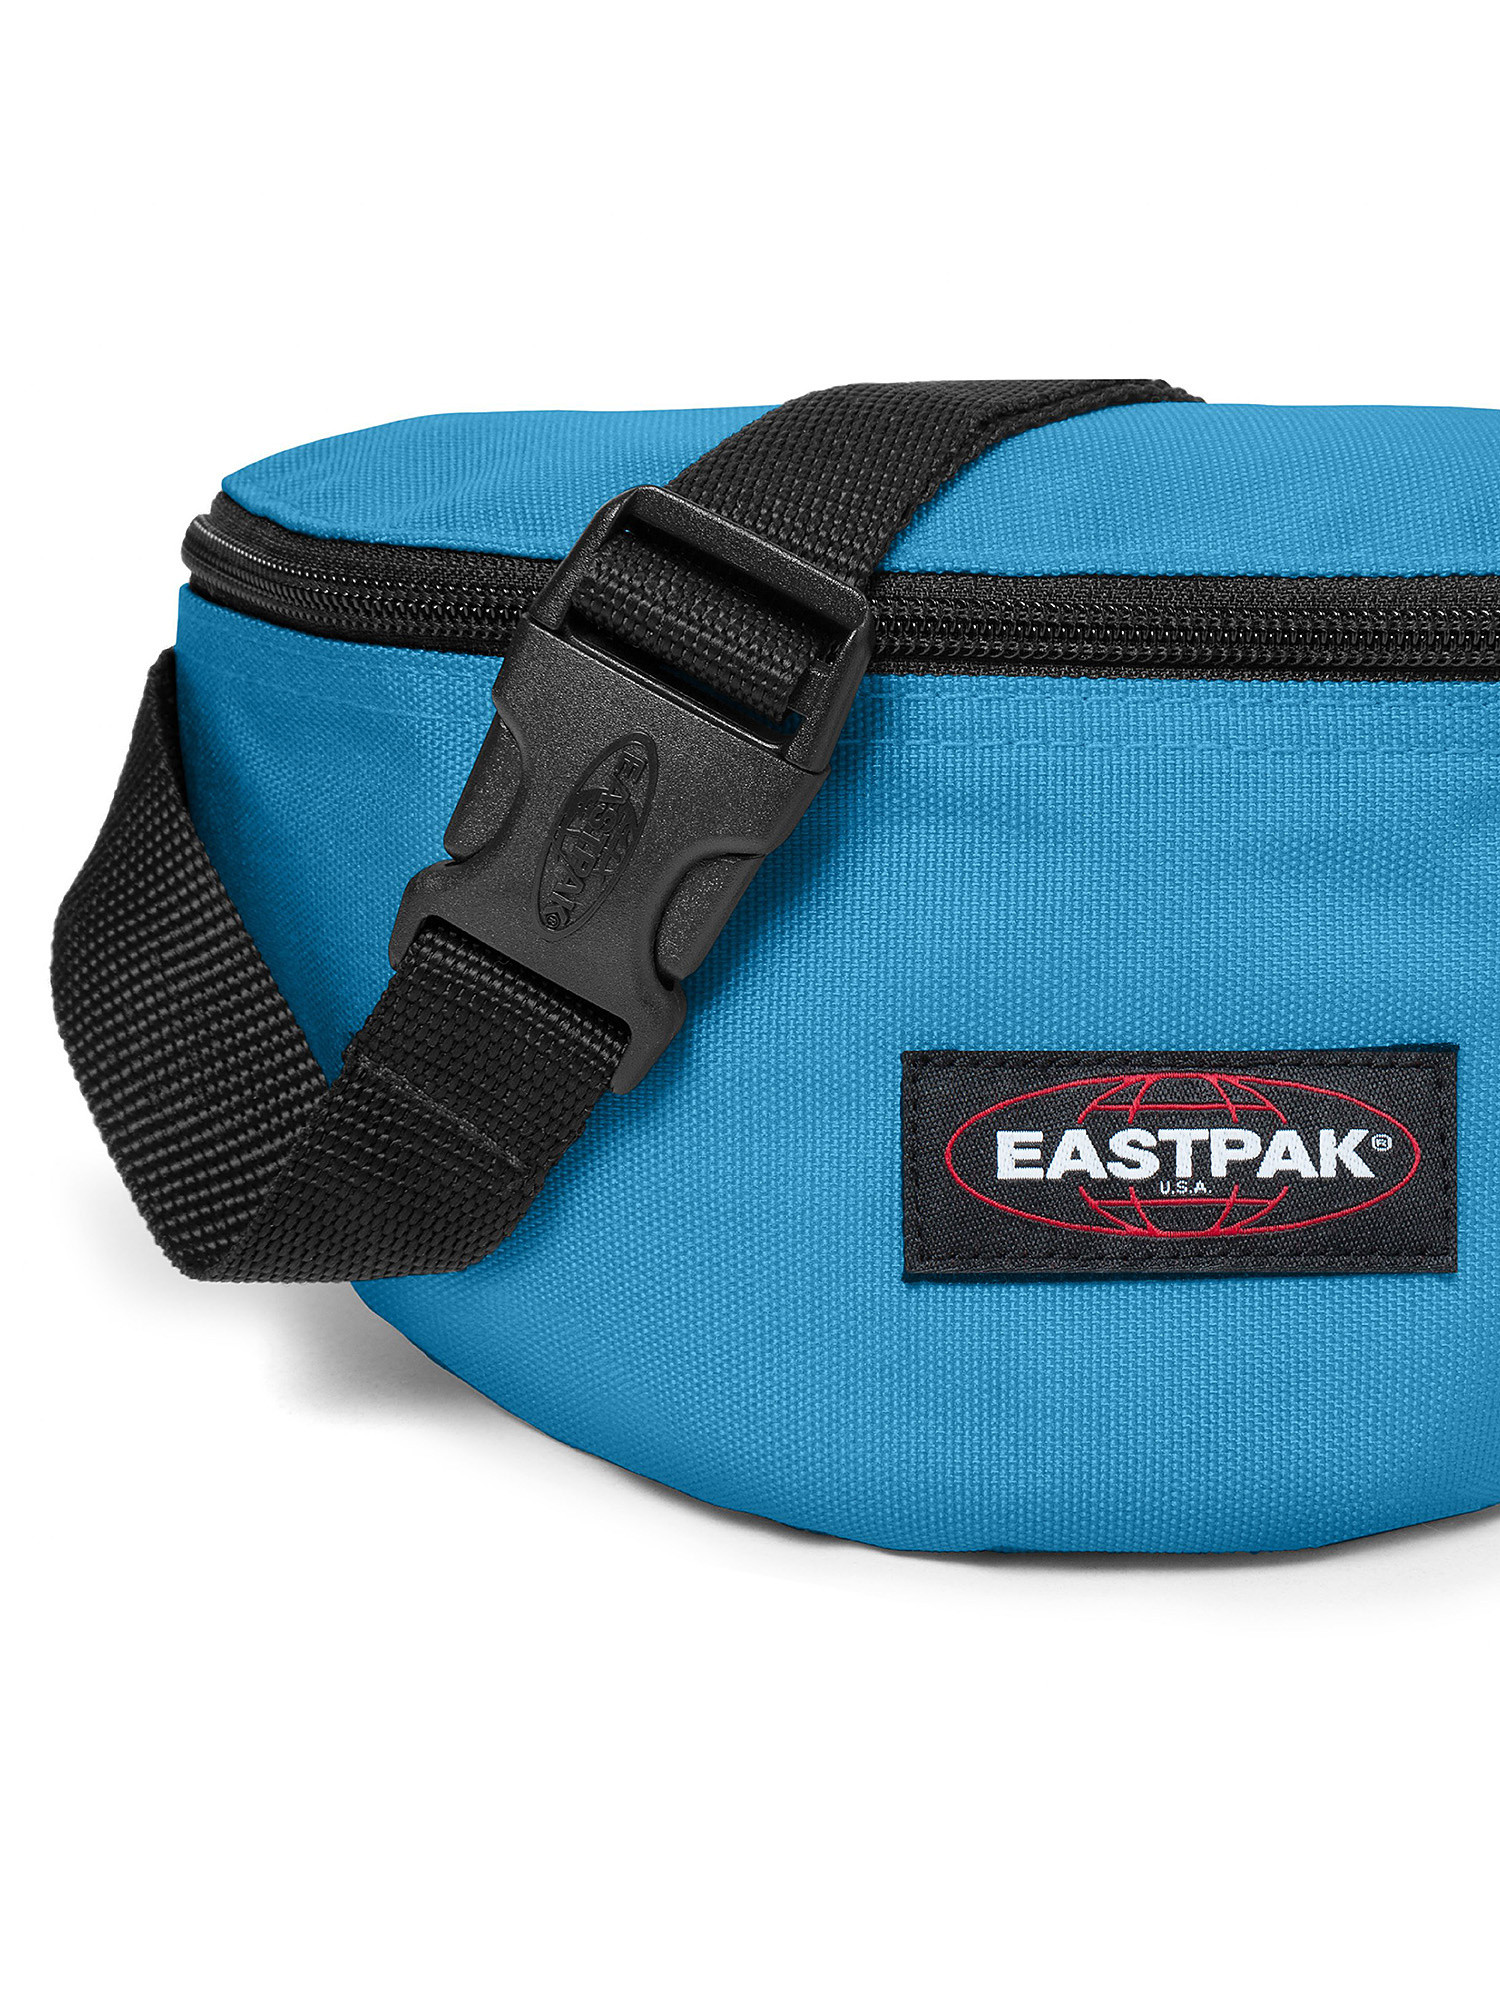 Eastpak - Springer Broad Blue Waist Bag, Blue Dark, large image number 3